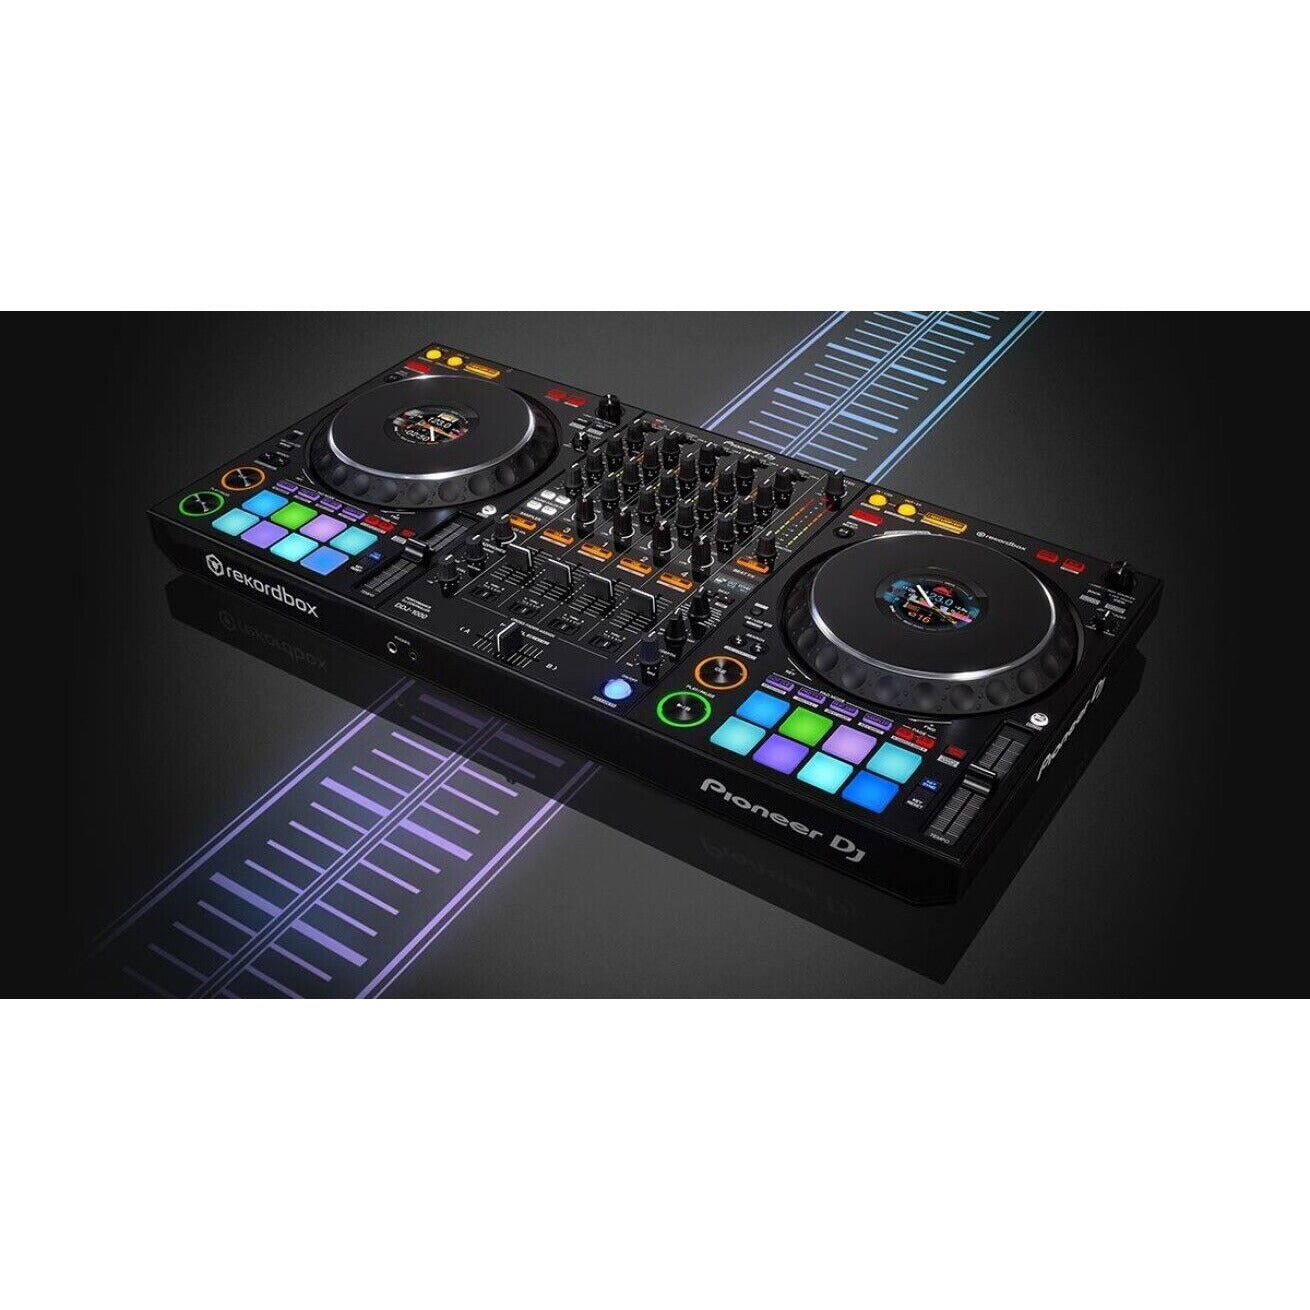 Pioneer DJ DDJ-1000 REKORDBOX DJ Controller AC100V New rekordbox dj